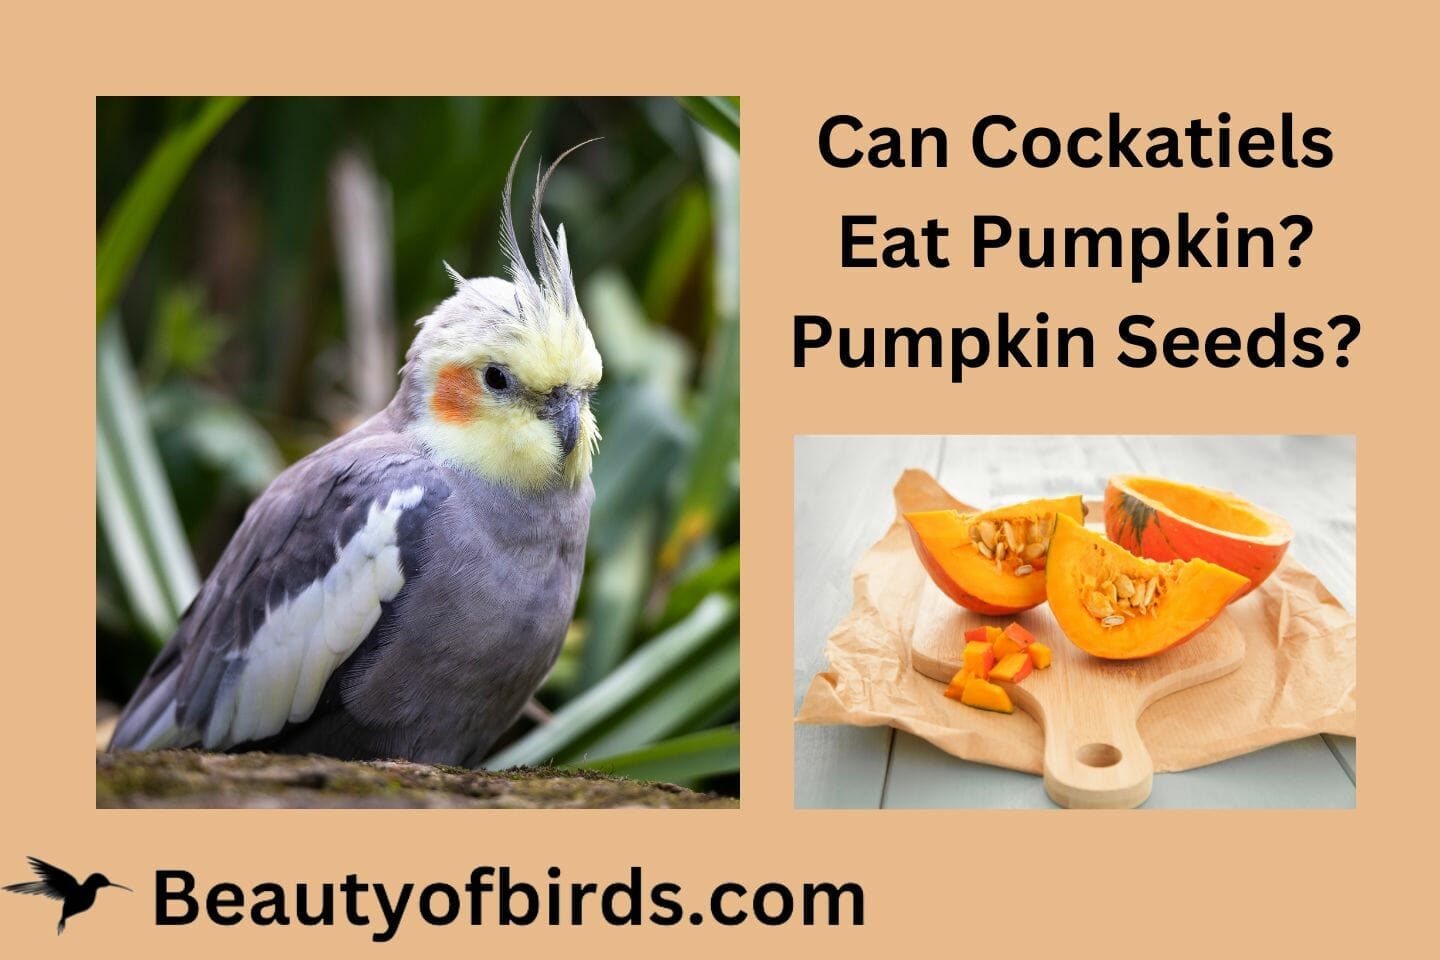 Can Cockatiels Eat Pumpkin